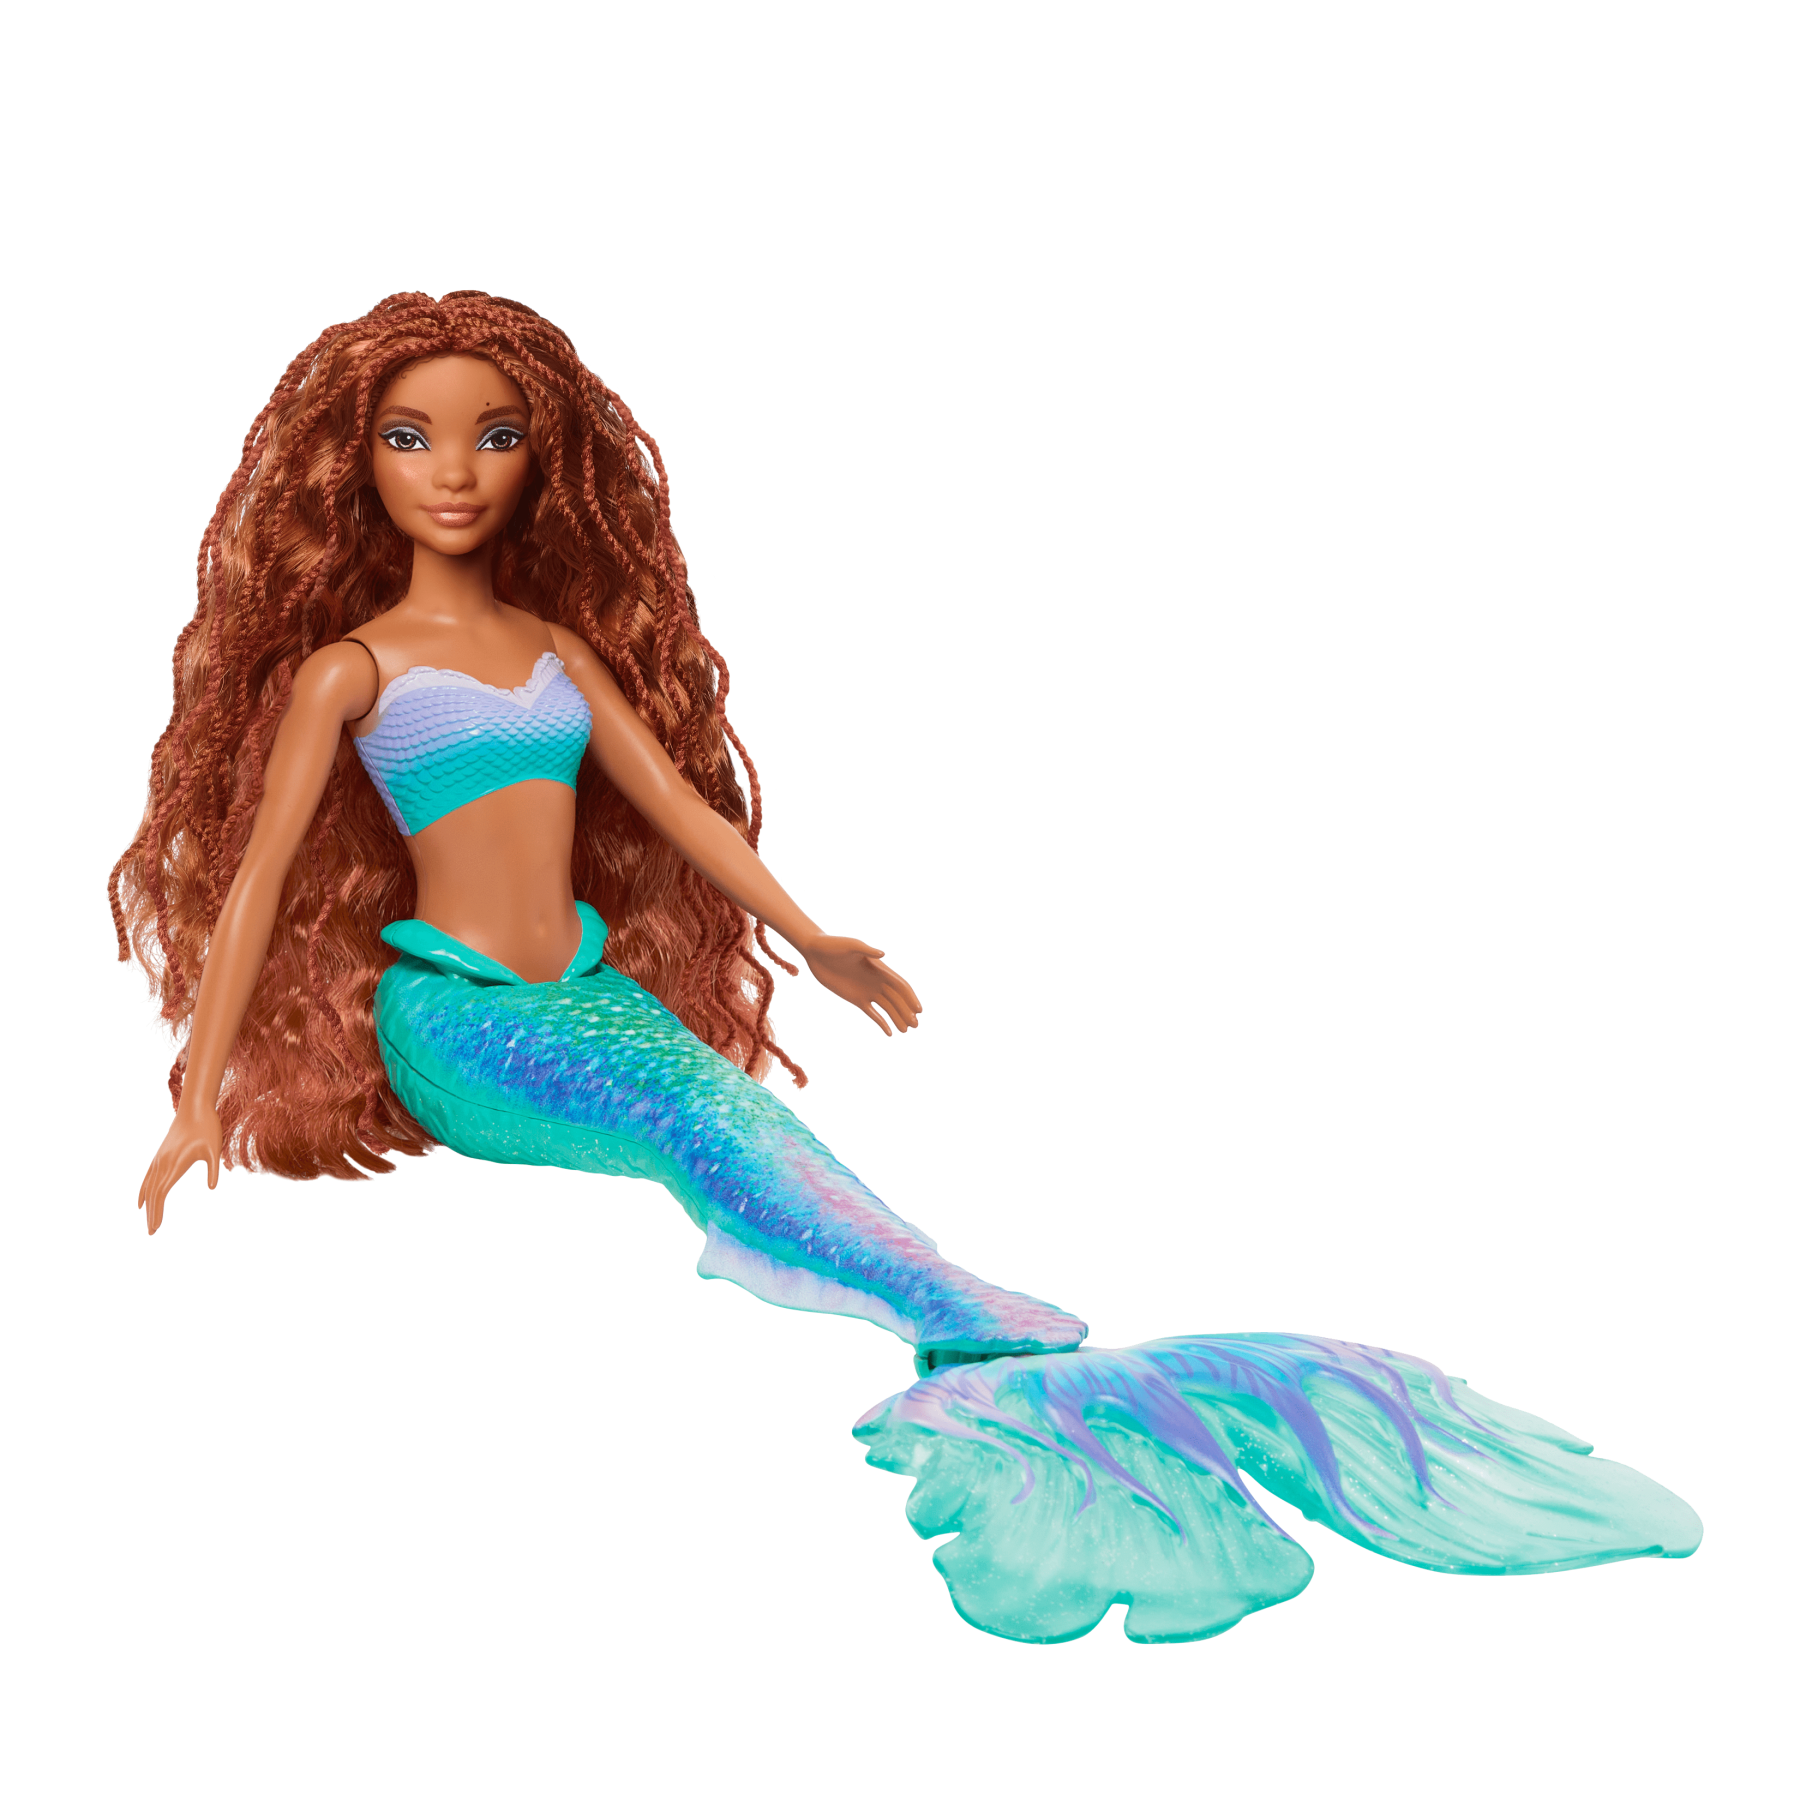 Disney la sirenetta - ariel, bambola con l'iconica coda da sirena colorata  e glitterata e lunghi capelli rossi da acconciare, look ispirato al film,  giocattolo per bambini, 3+ anni, hlx08 - Toys Center